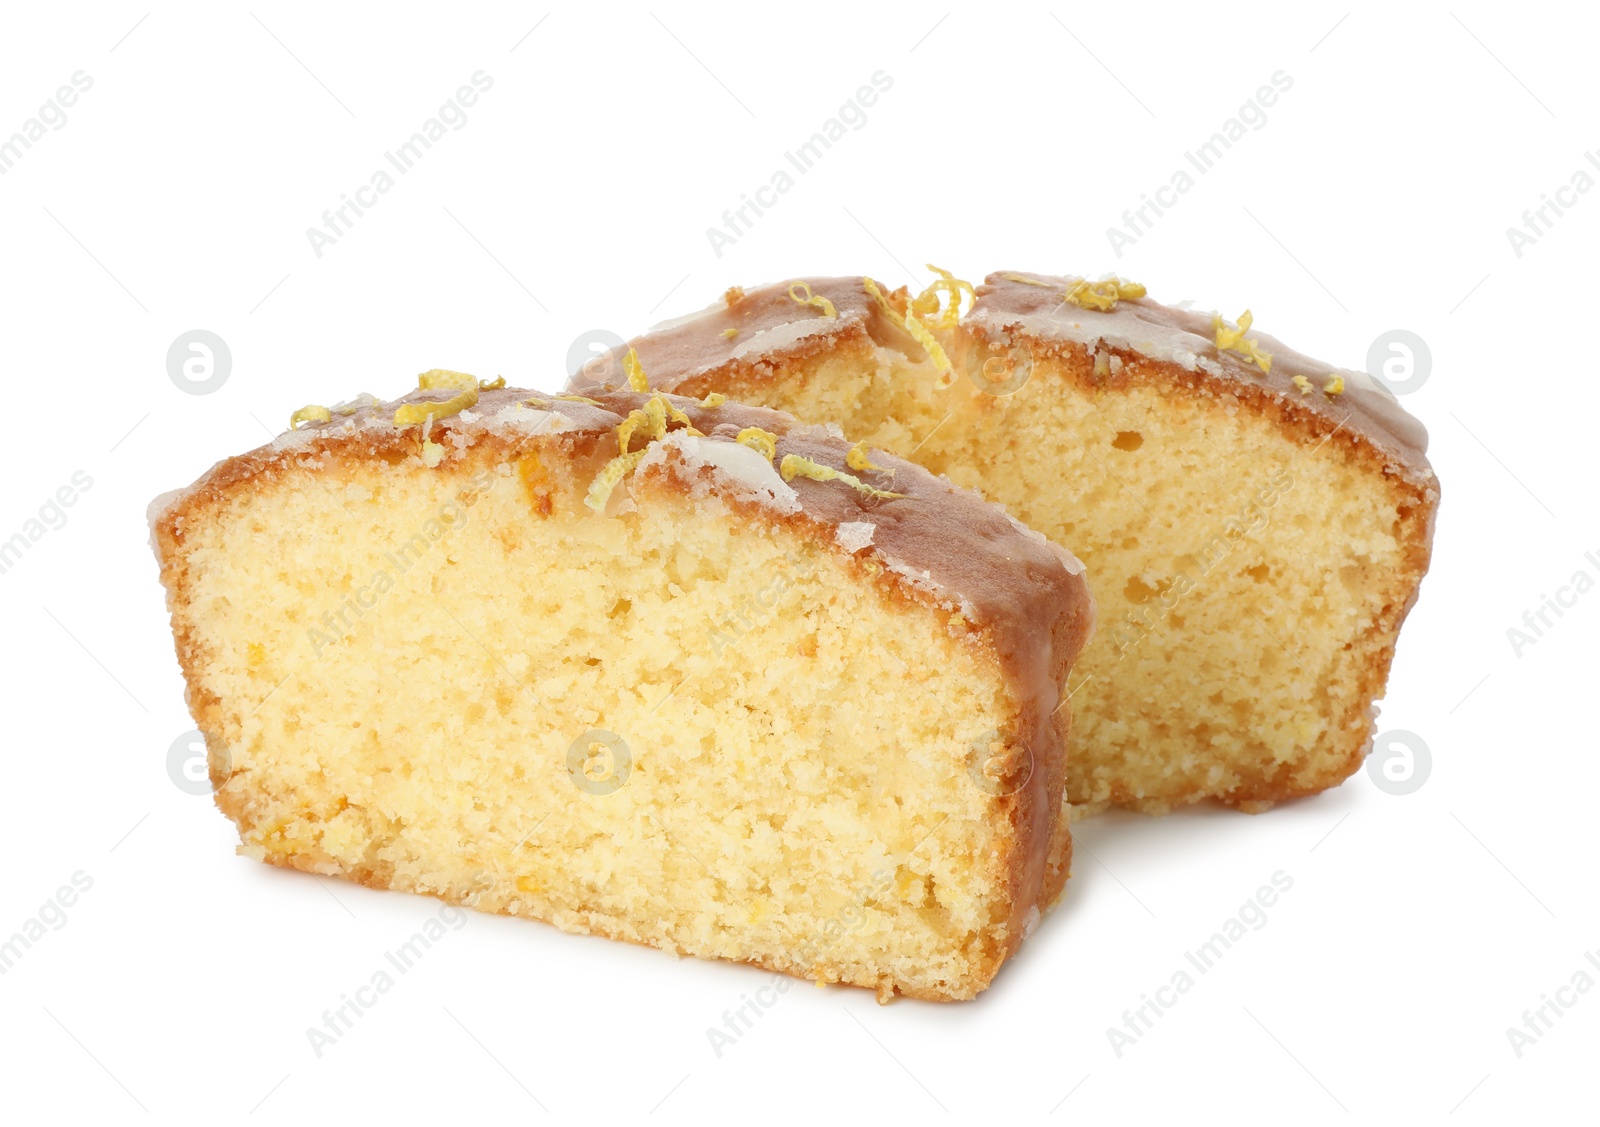 Photo of Pieces of tasty lemon cake with glaze isolated on white